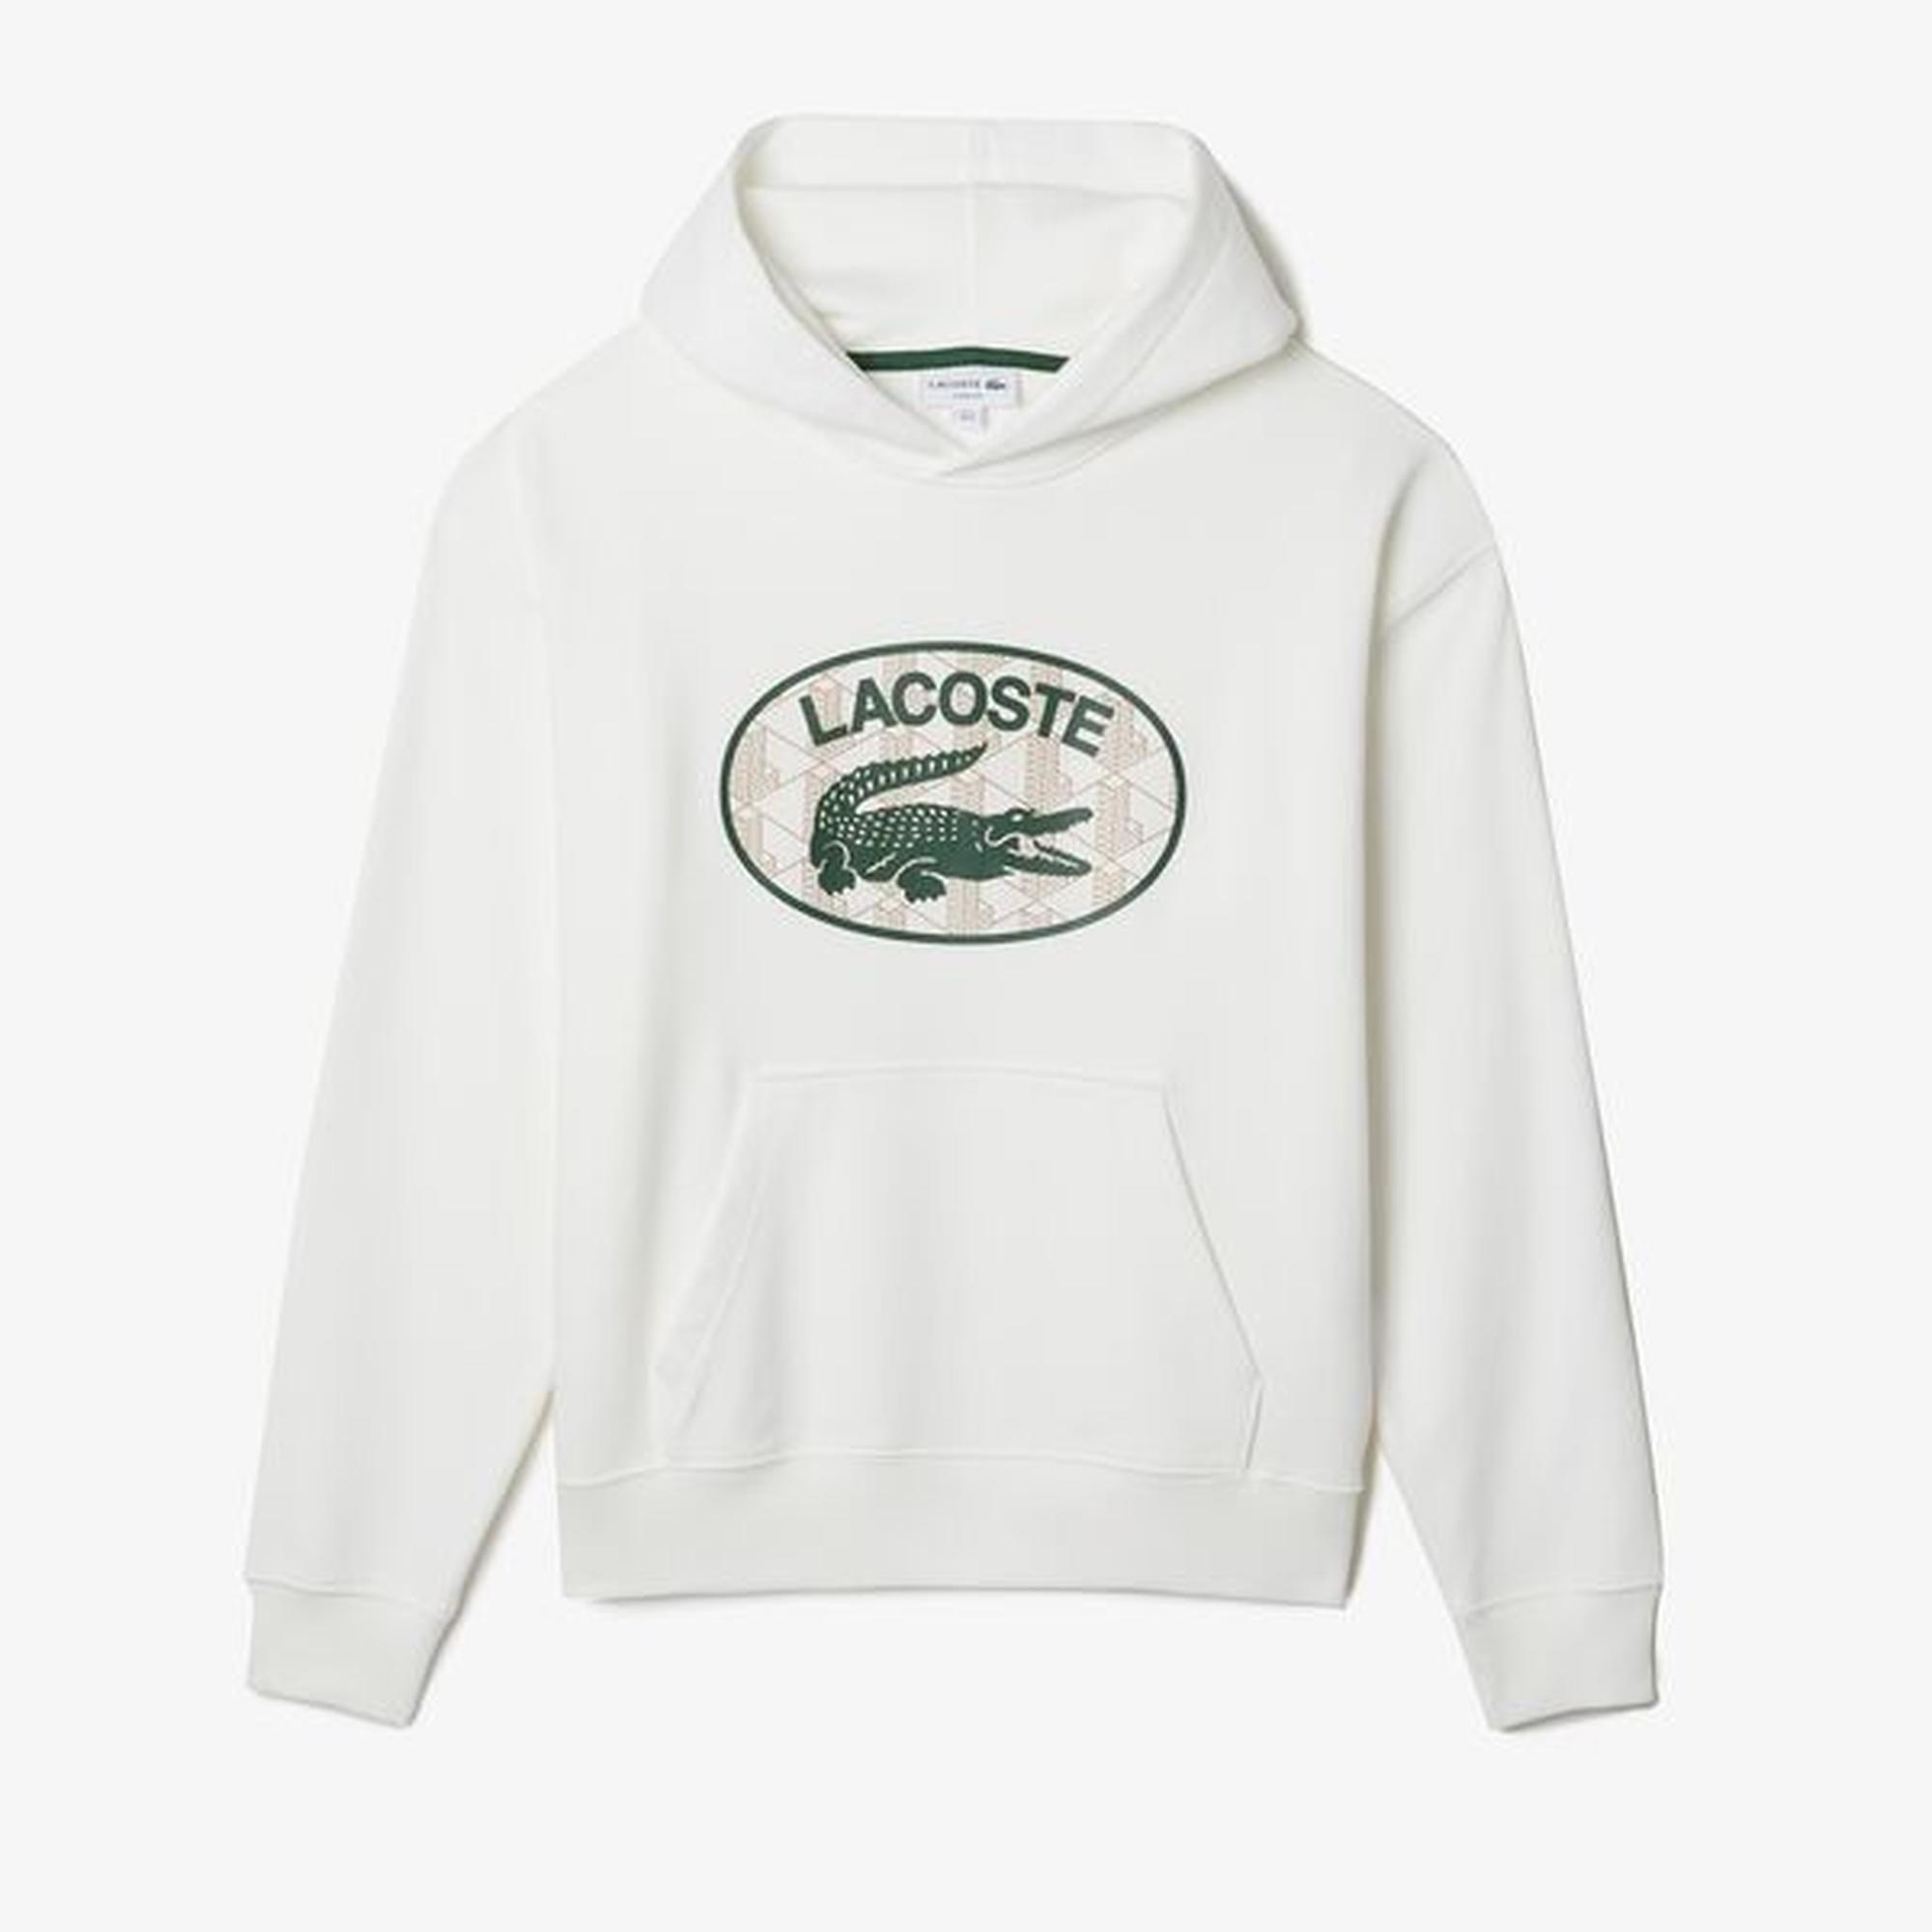 Lacoste Men's Loose Fit Branded Monogram Hooded Sweatshirt